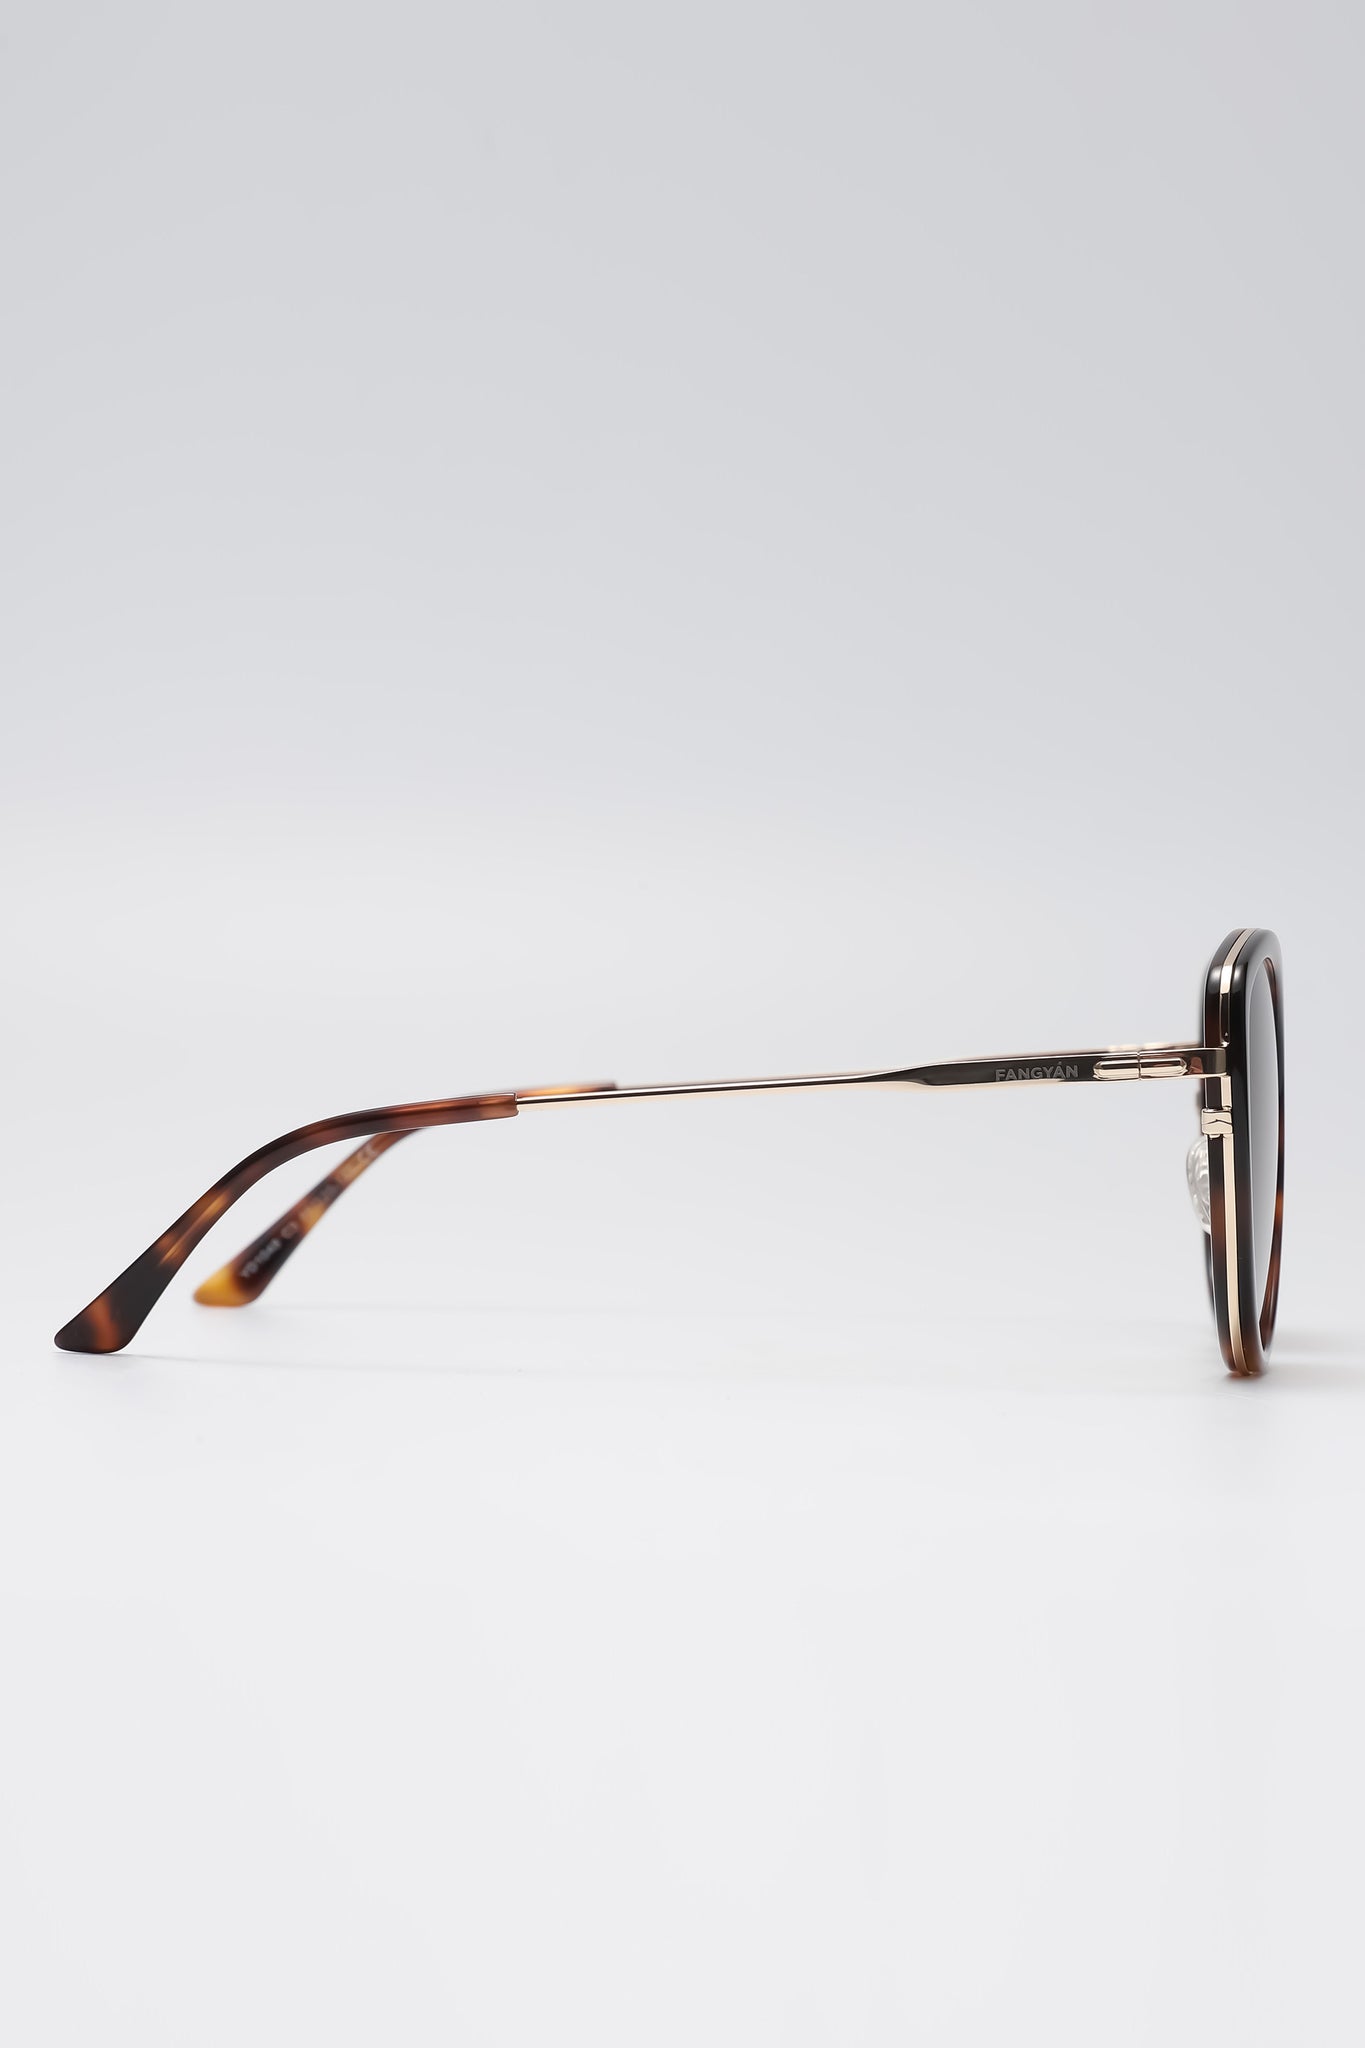 Fangyan | Square-Round Tortoiseshell Metal Sunglasses